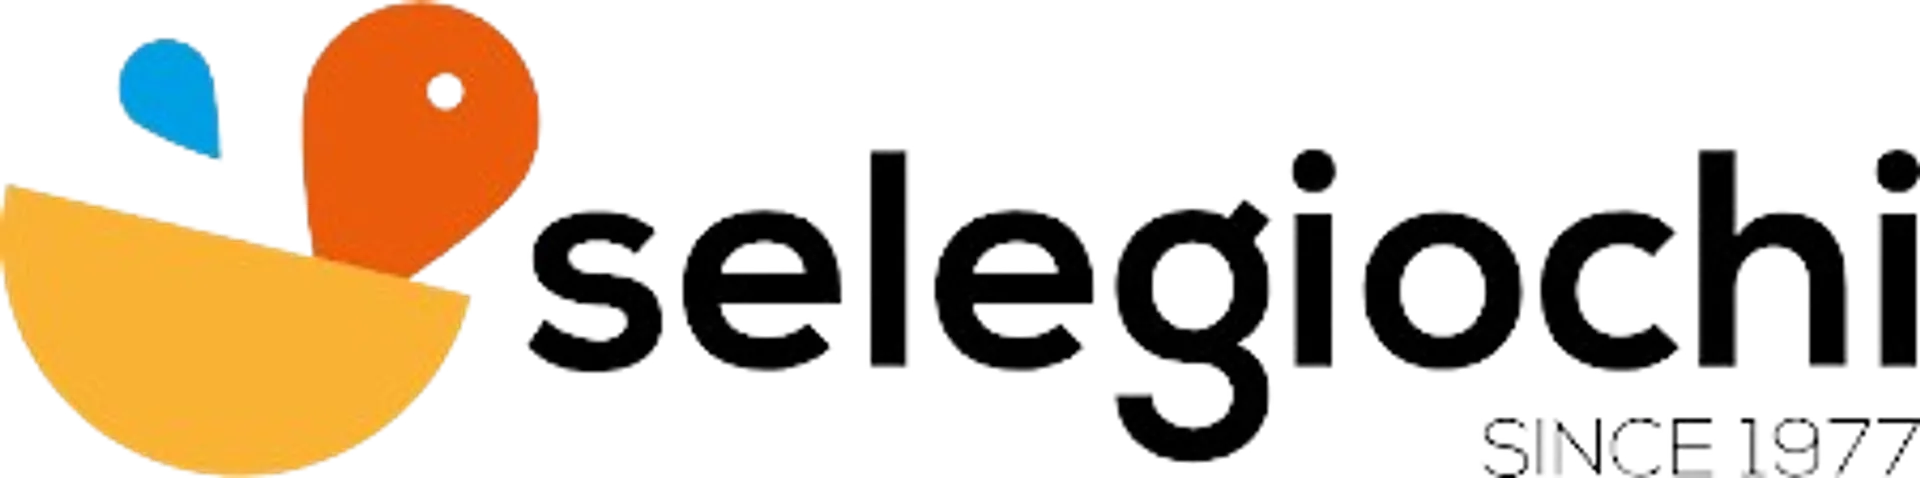 SELEGIOCHI logo del volantino attuale